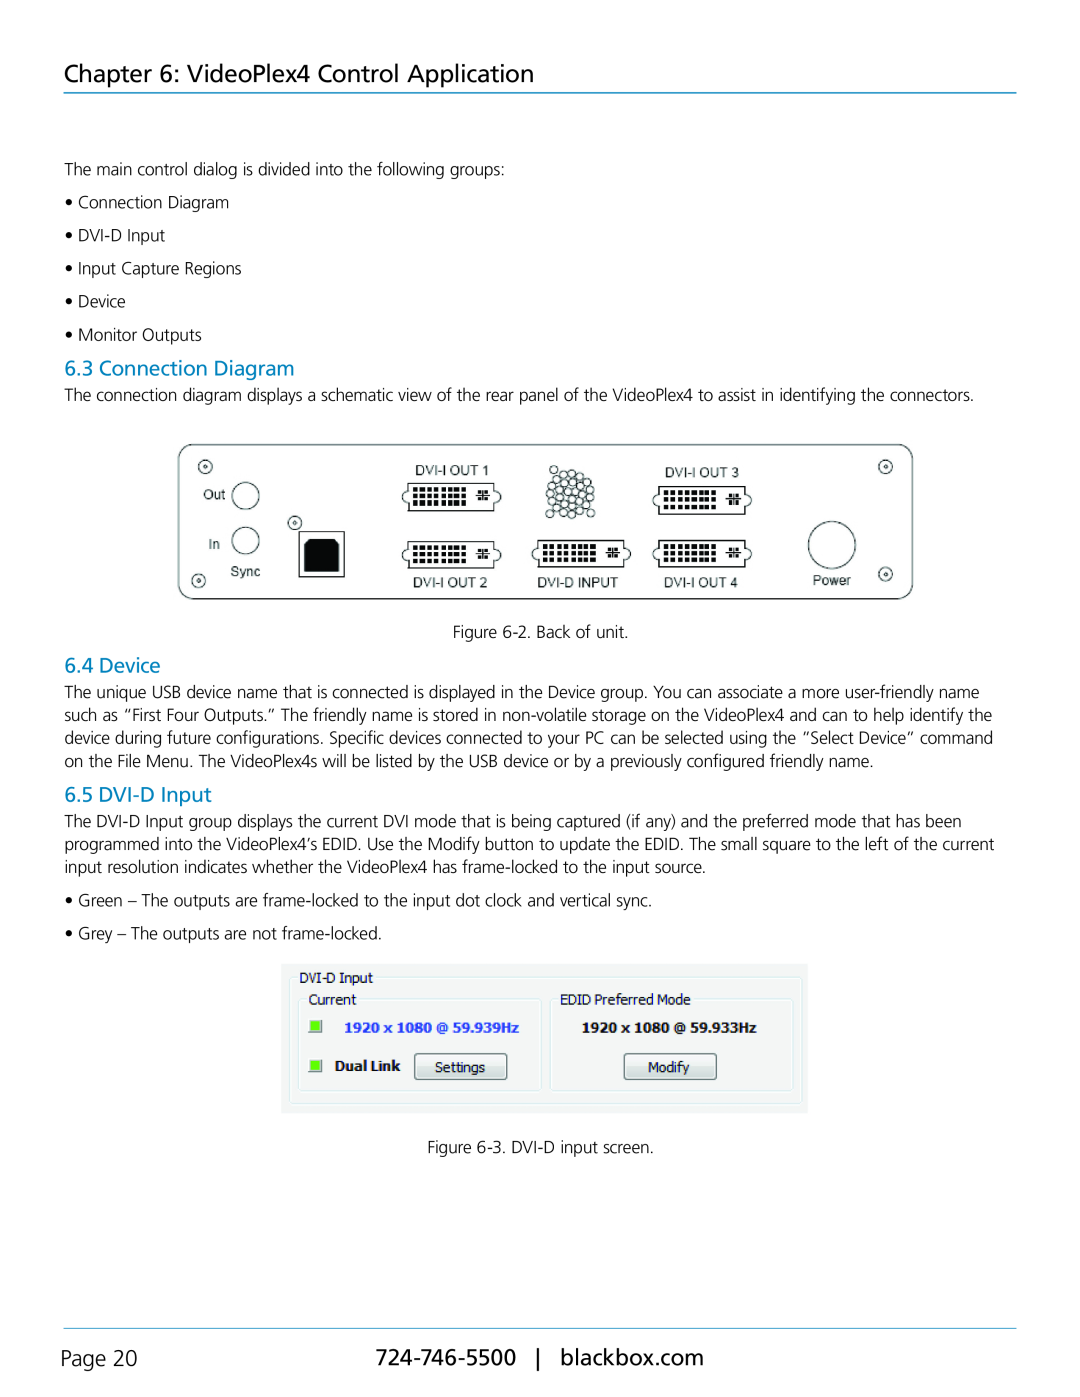 Black Box VSC-VPLEX4 manual Connection Diagram, Device, DVI-DInput, VideoPlex4 Control Application, Page 